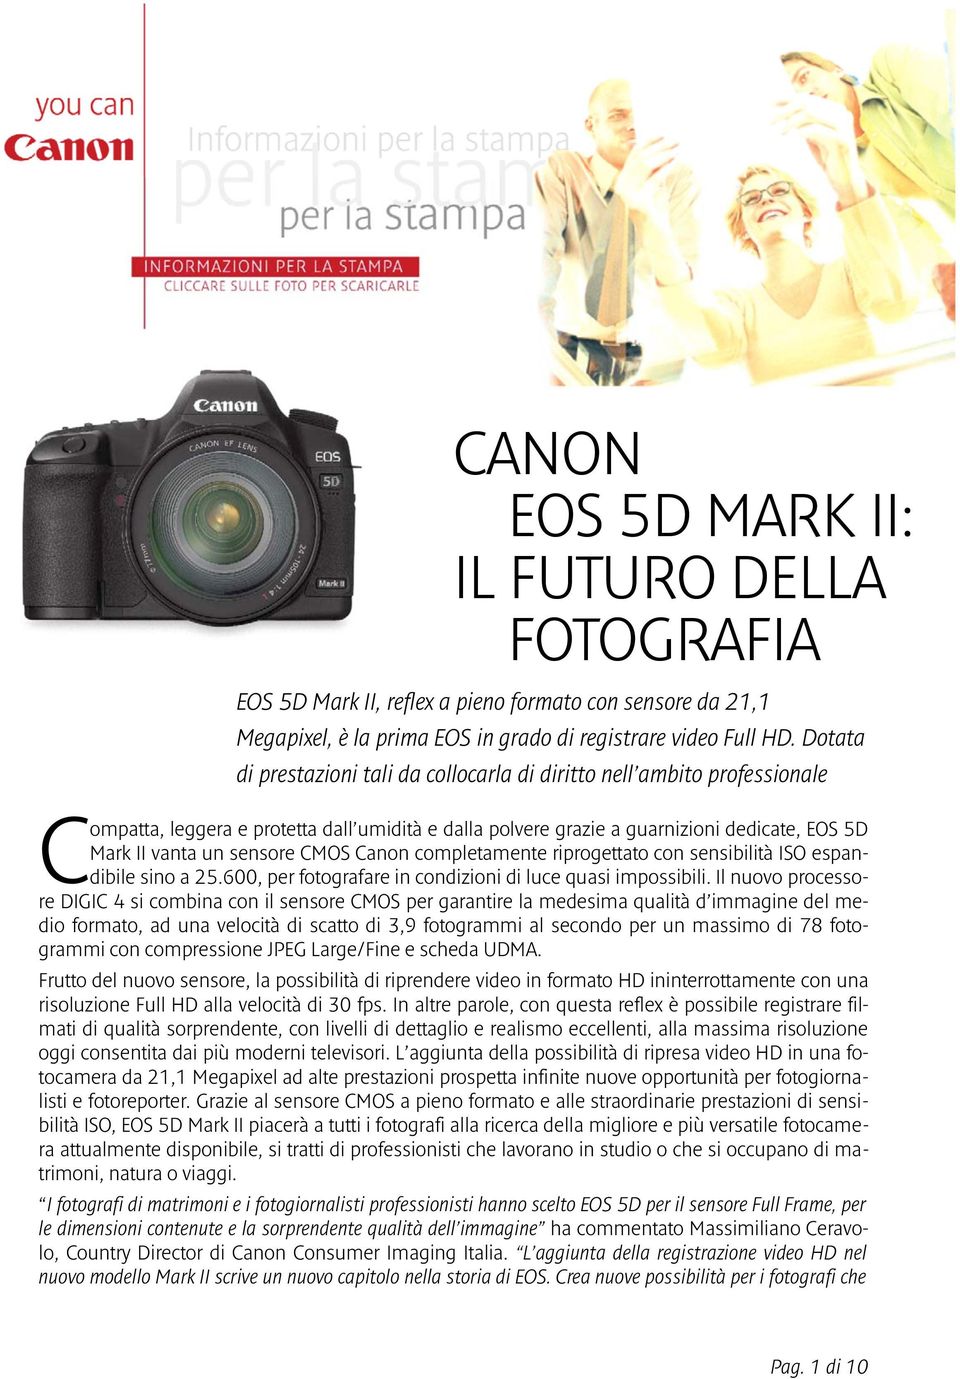 CMOS Canon completamente riprogettato con sensibilità ISO espandibile sino a 25.600, per fotografare in condizioni di luce quasi impossibili.